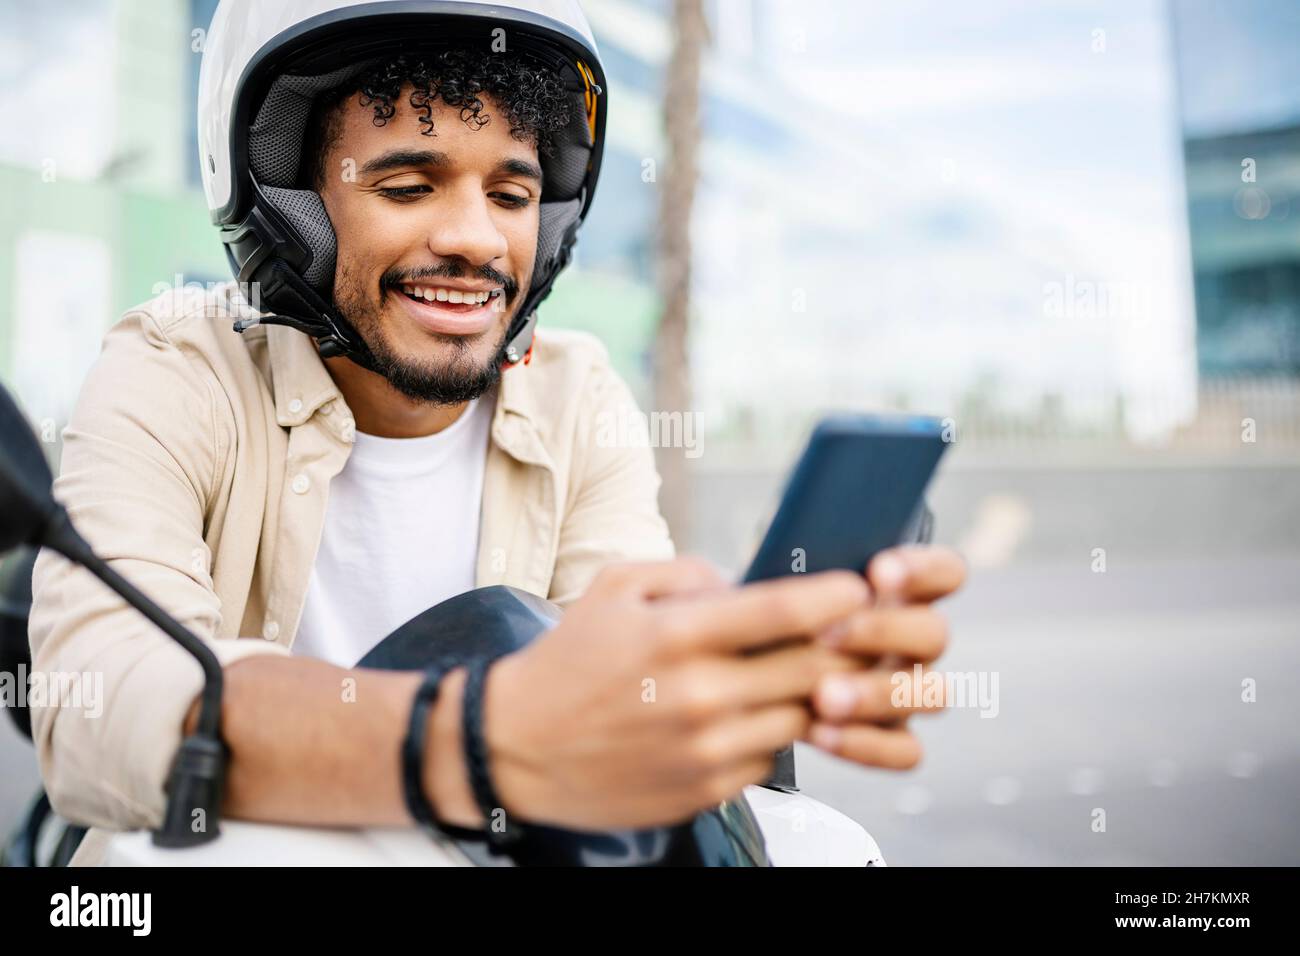 Lächelnder Mann mit Sturzhelm und Mobiltelefon Stockfoto